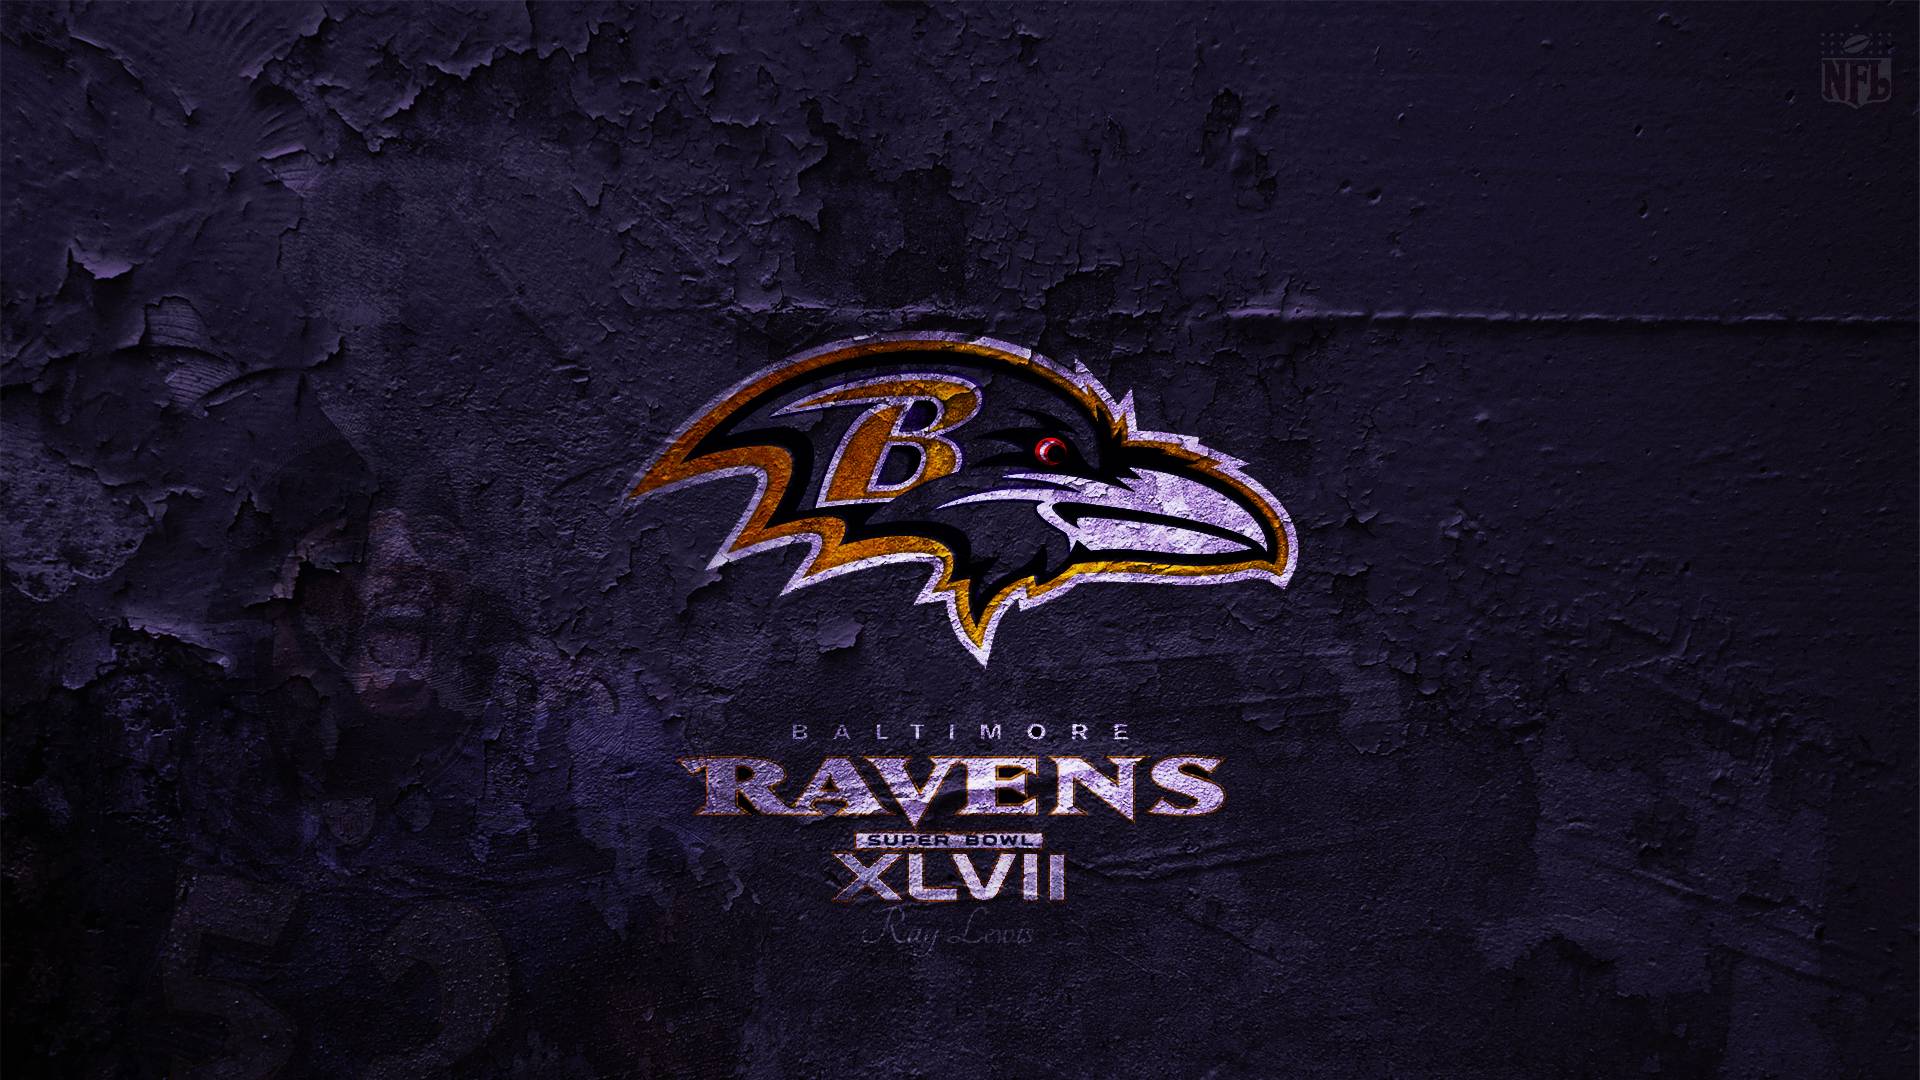 Baltimore ravens wallpaper